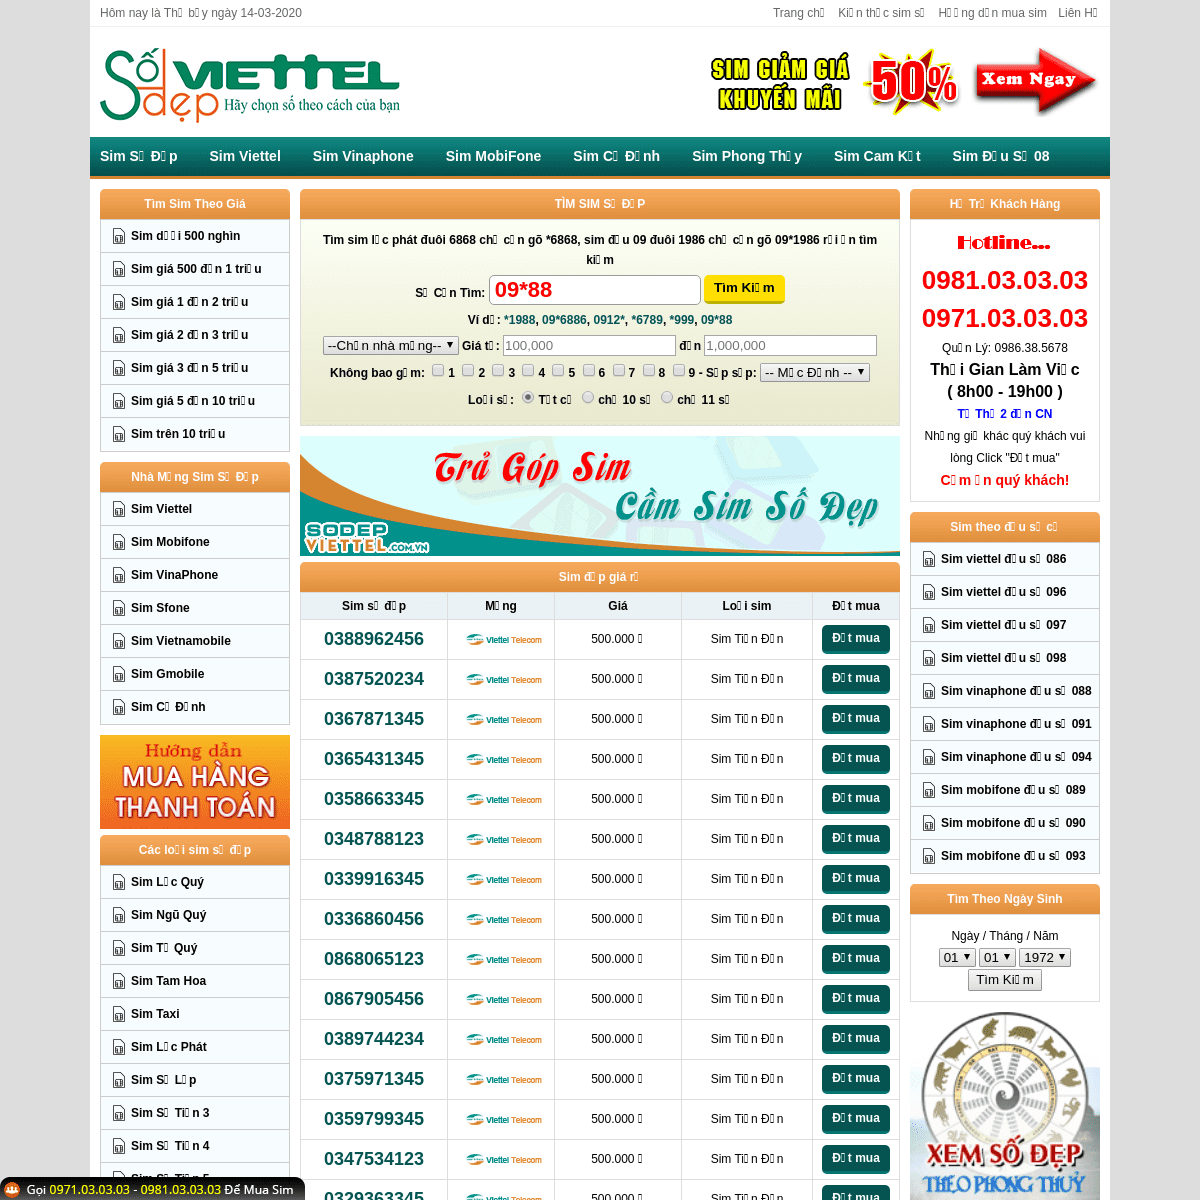 A complete backup of sodepviettel.com.vn